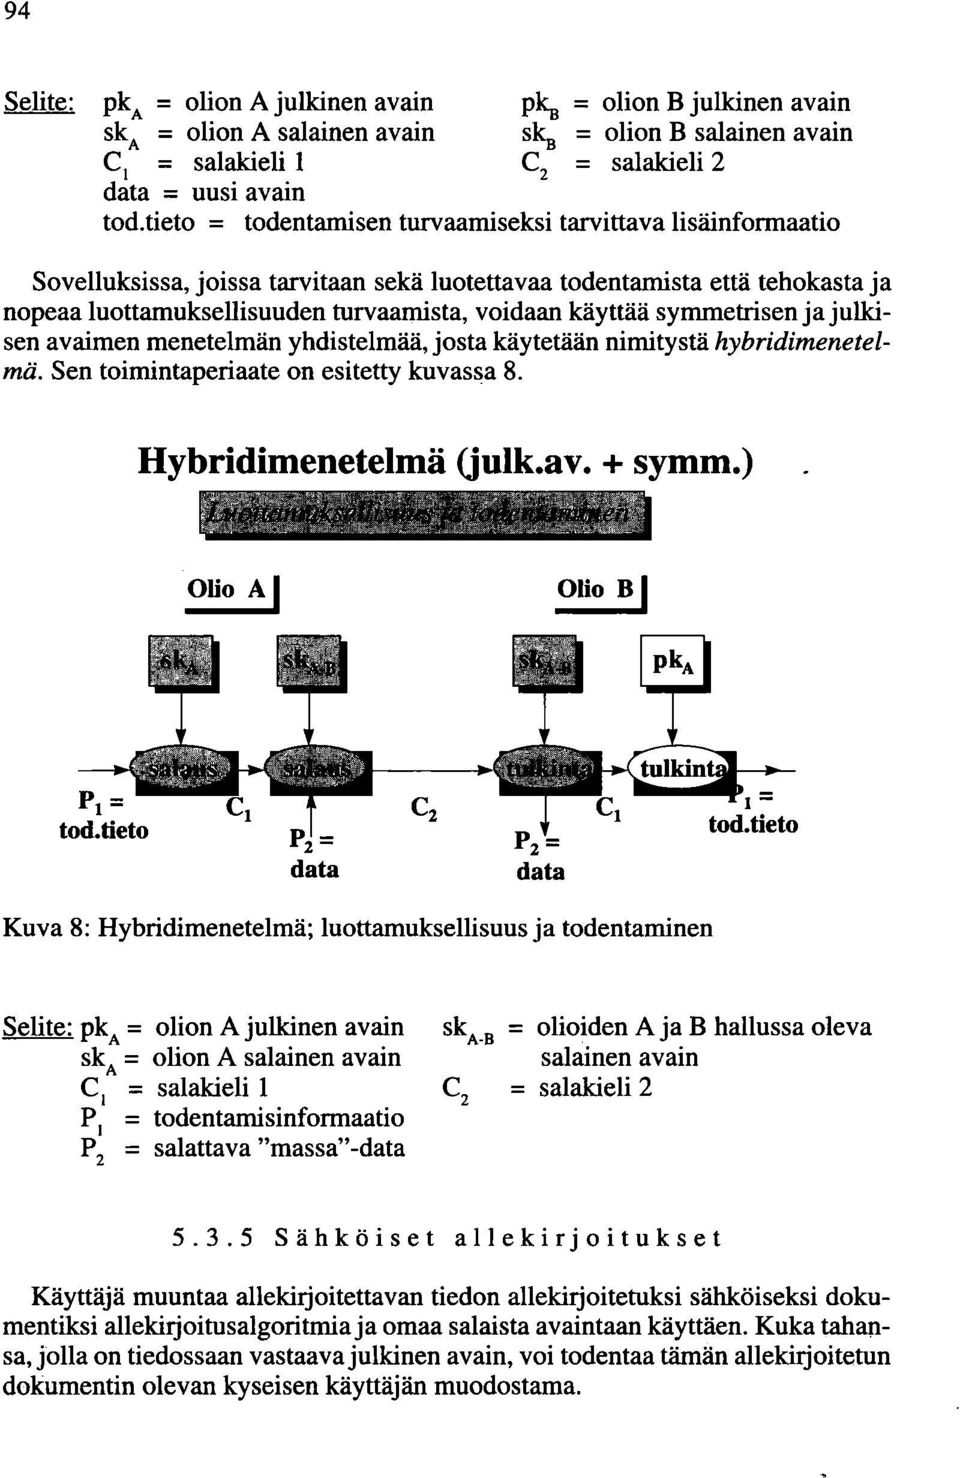 symmetrisen ja julkisen avaimen menetelmän yhdistelmää, josta käytetään nimitystä hybridimenetelmä. Sen toimintaperiaate on esitetty kuvassa 8. Hybridimenetelmä (julk.av. + symm.